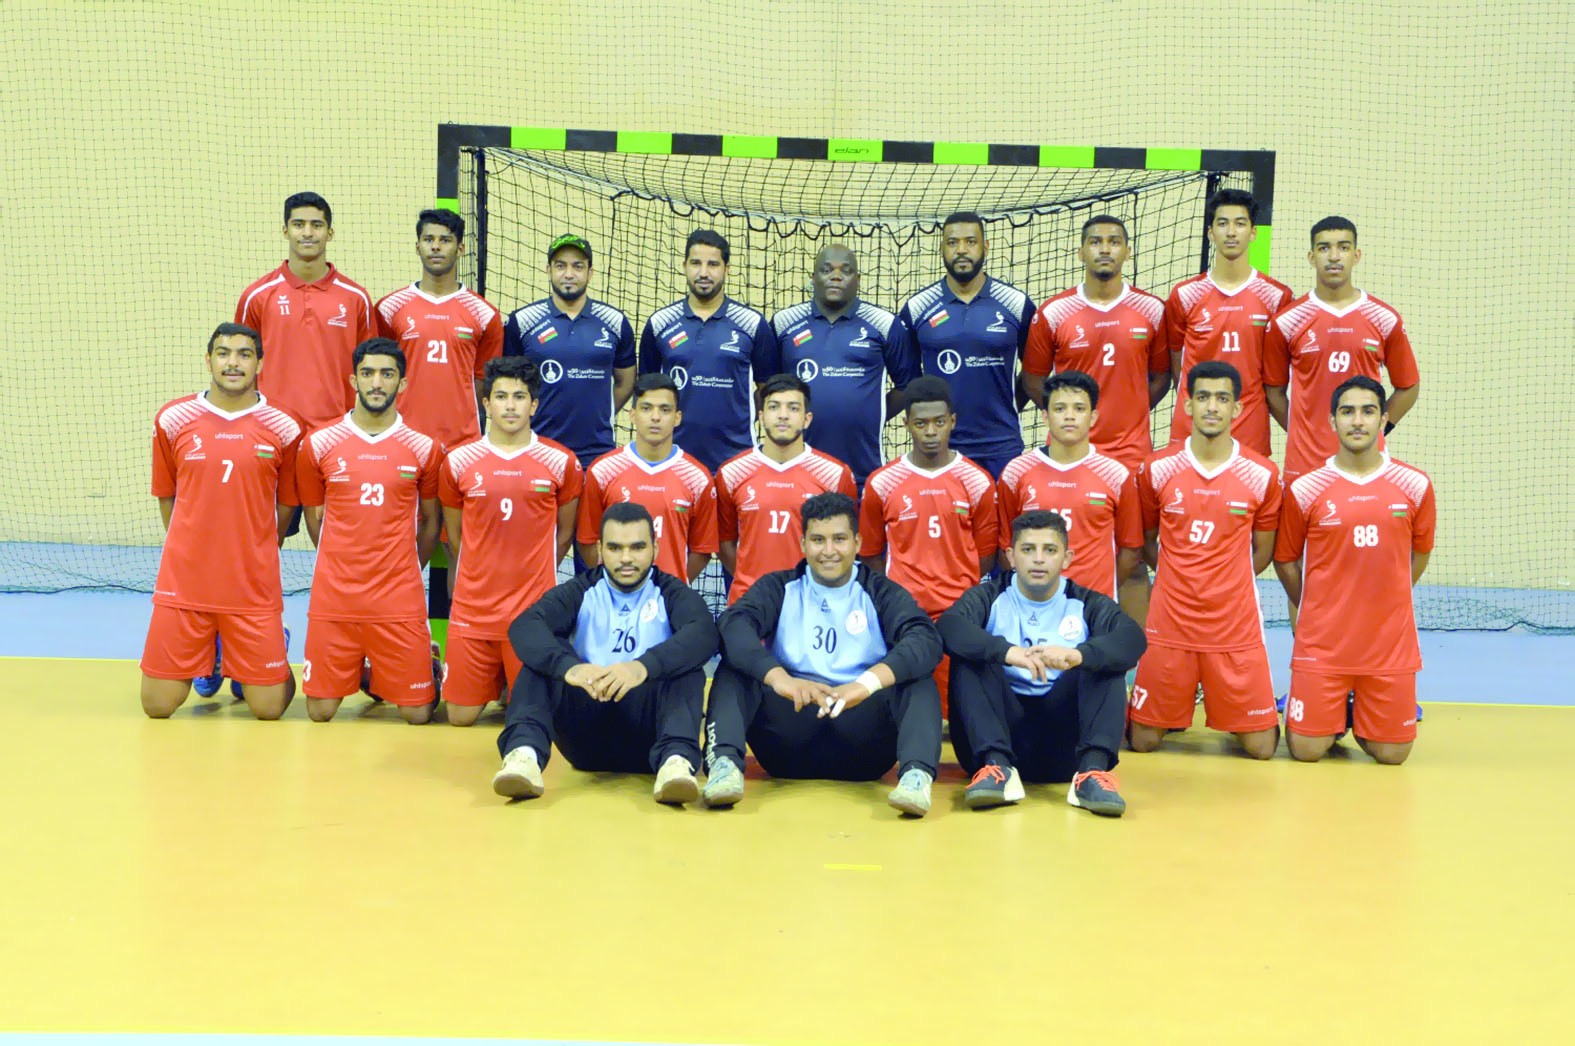 في البطولة الآسيوية الثامنة بالأردنمنتخبناالوطني لناشئي اليد يفتتح اليوم مشواره بمواجهة قوية أمام المنتخب البحريني